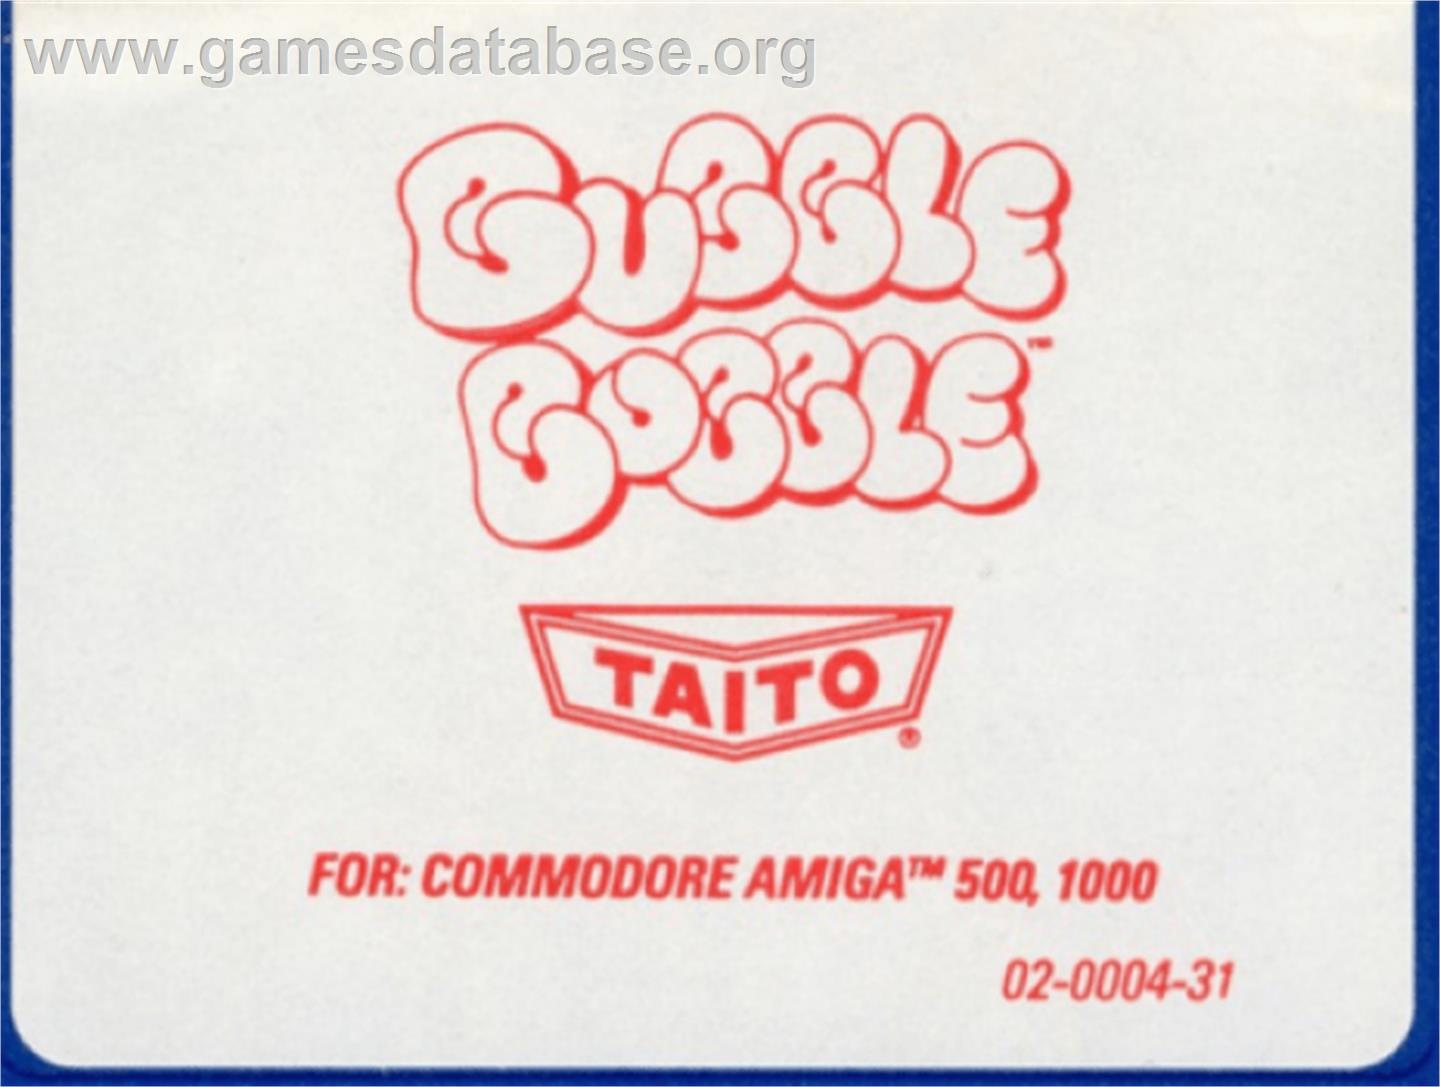 Bubble Bobble - Commodore Amiga - Artwork - Cartridge Top